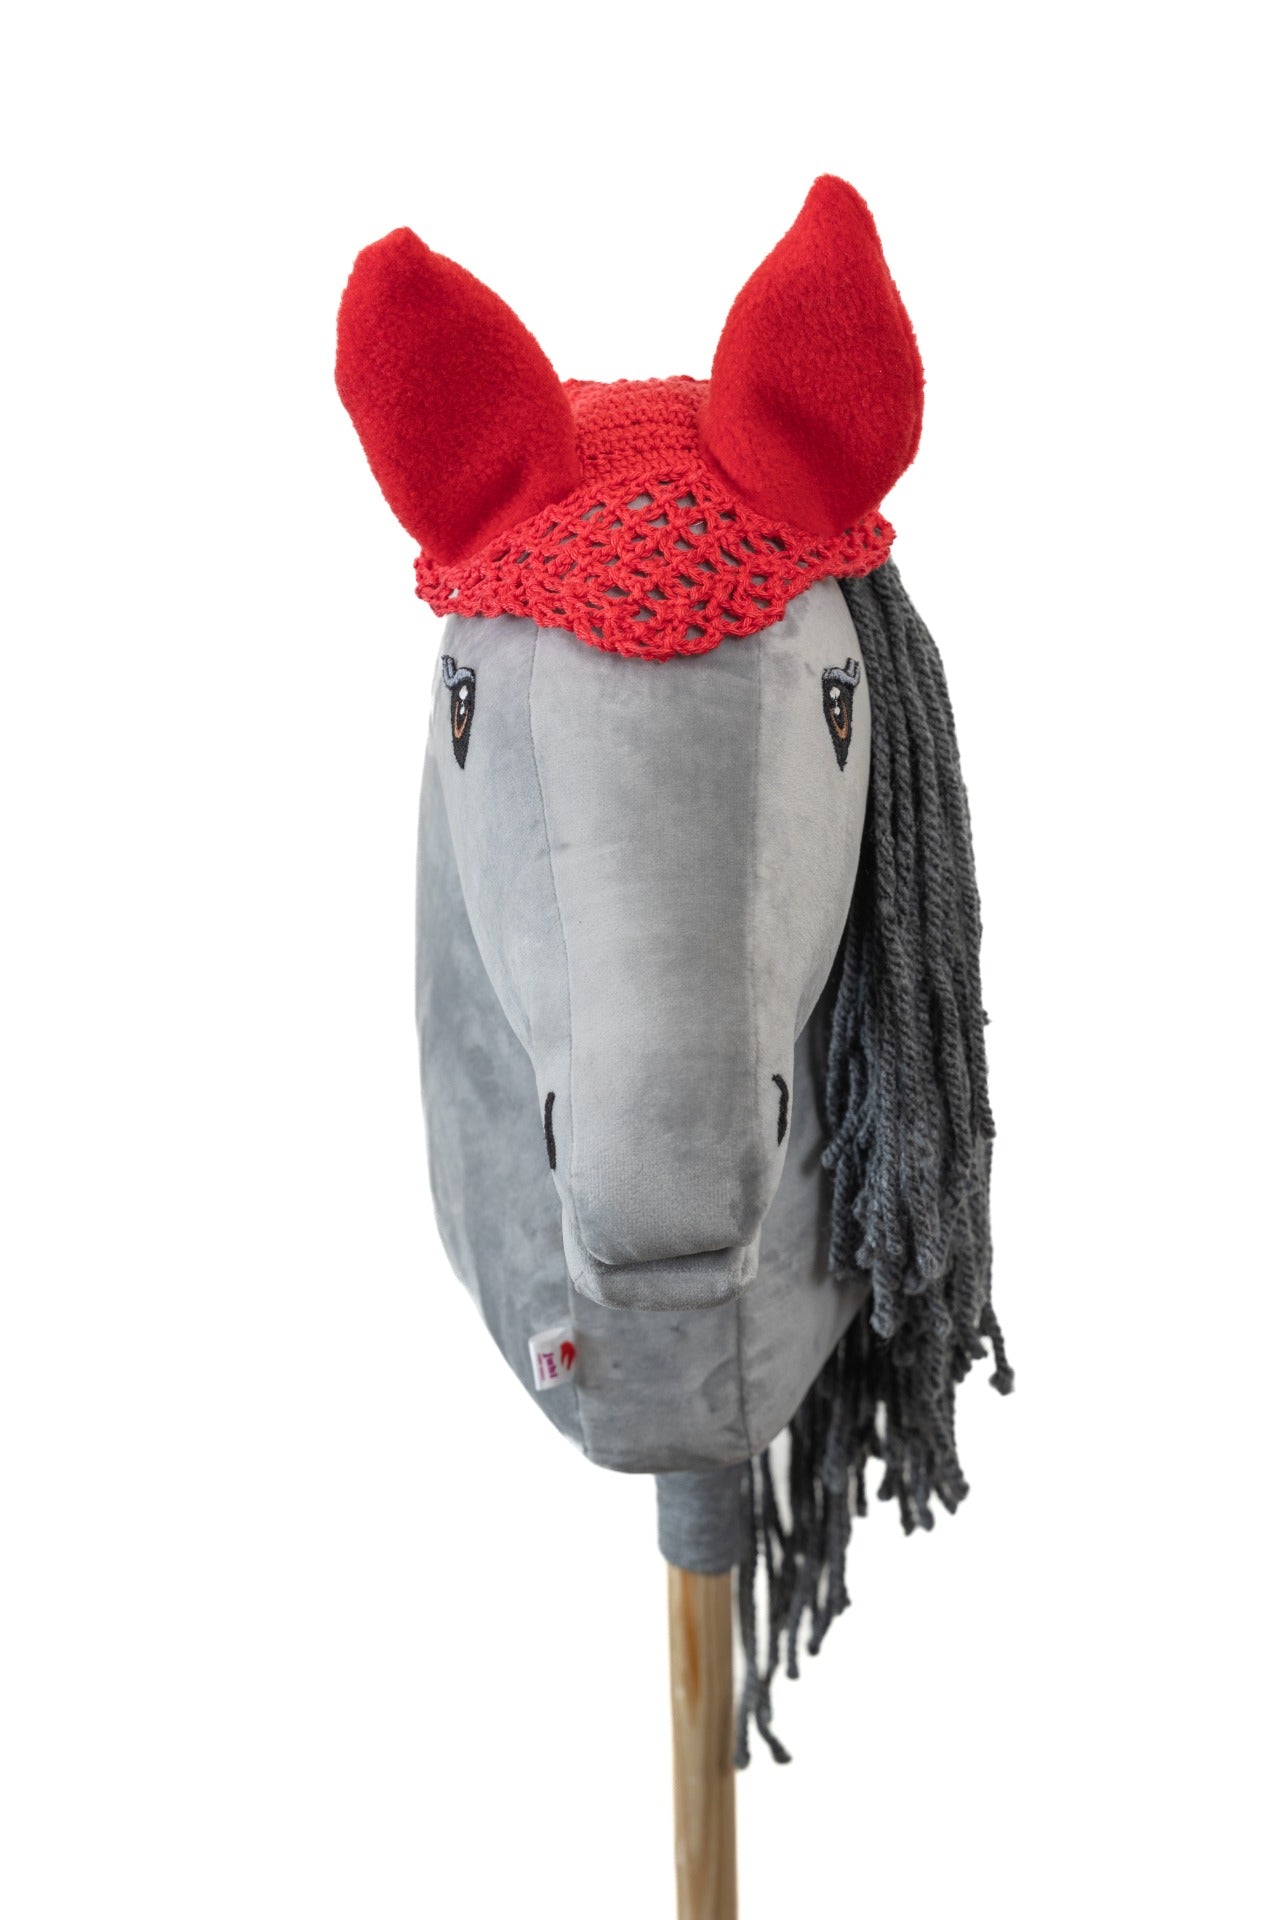 Ear net crocheted - Red - Foal